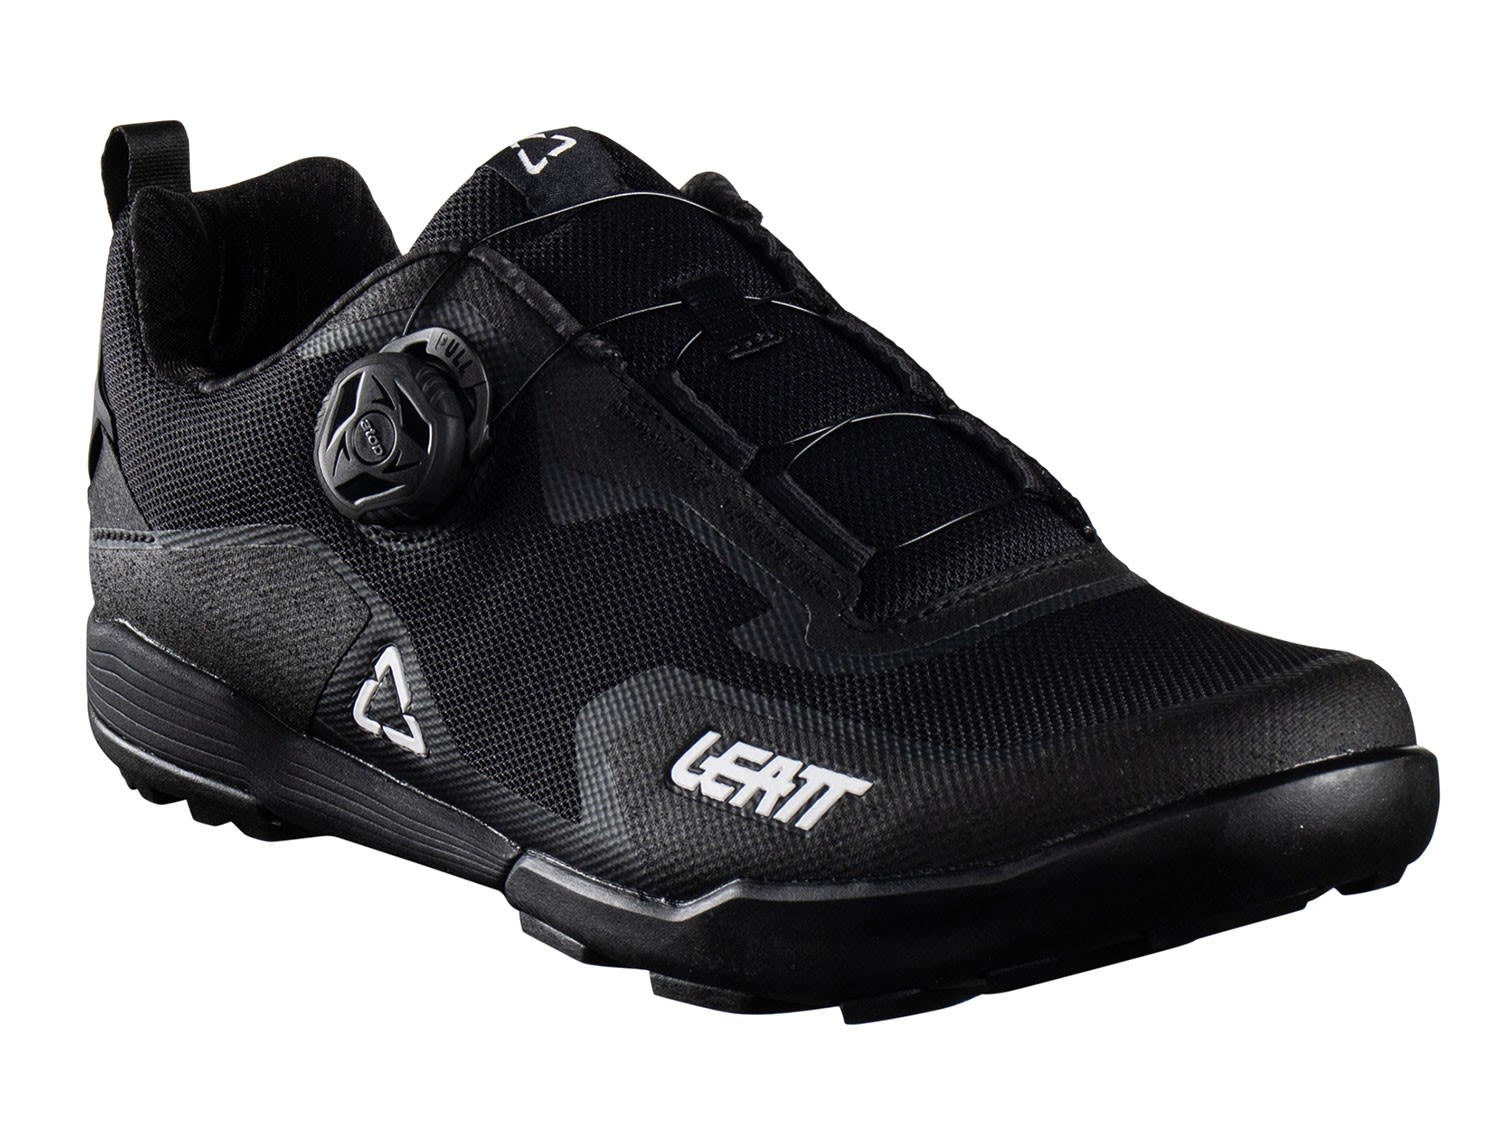 Leatt 6-0 Klickpedal Shoe Schwarz- All-Mountain-Trekking- Grsse EU 40 - Farbe Black